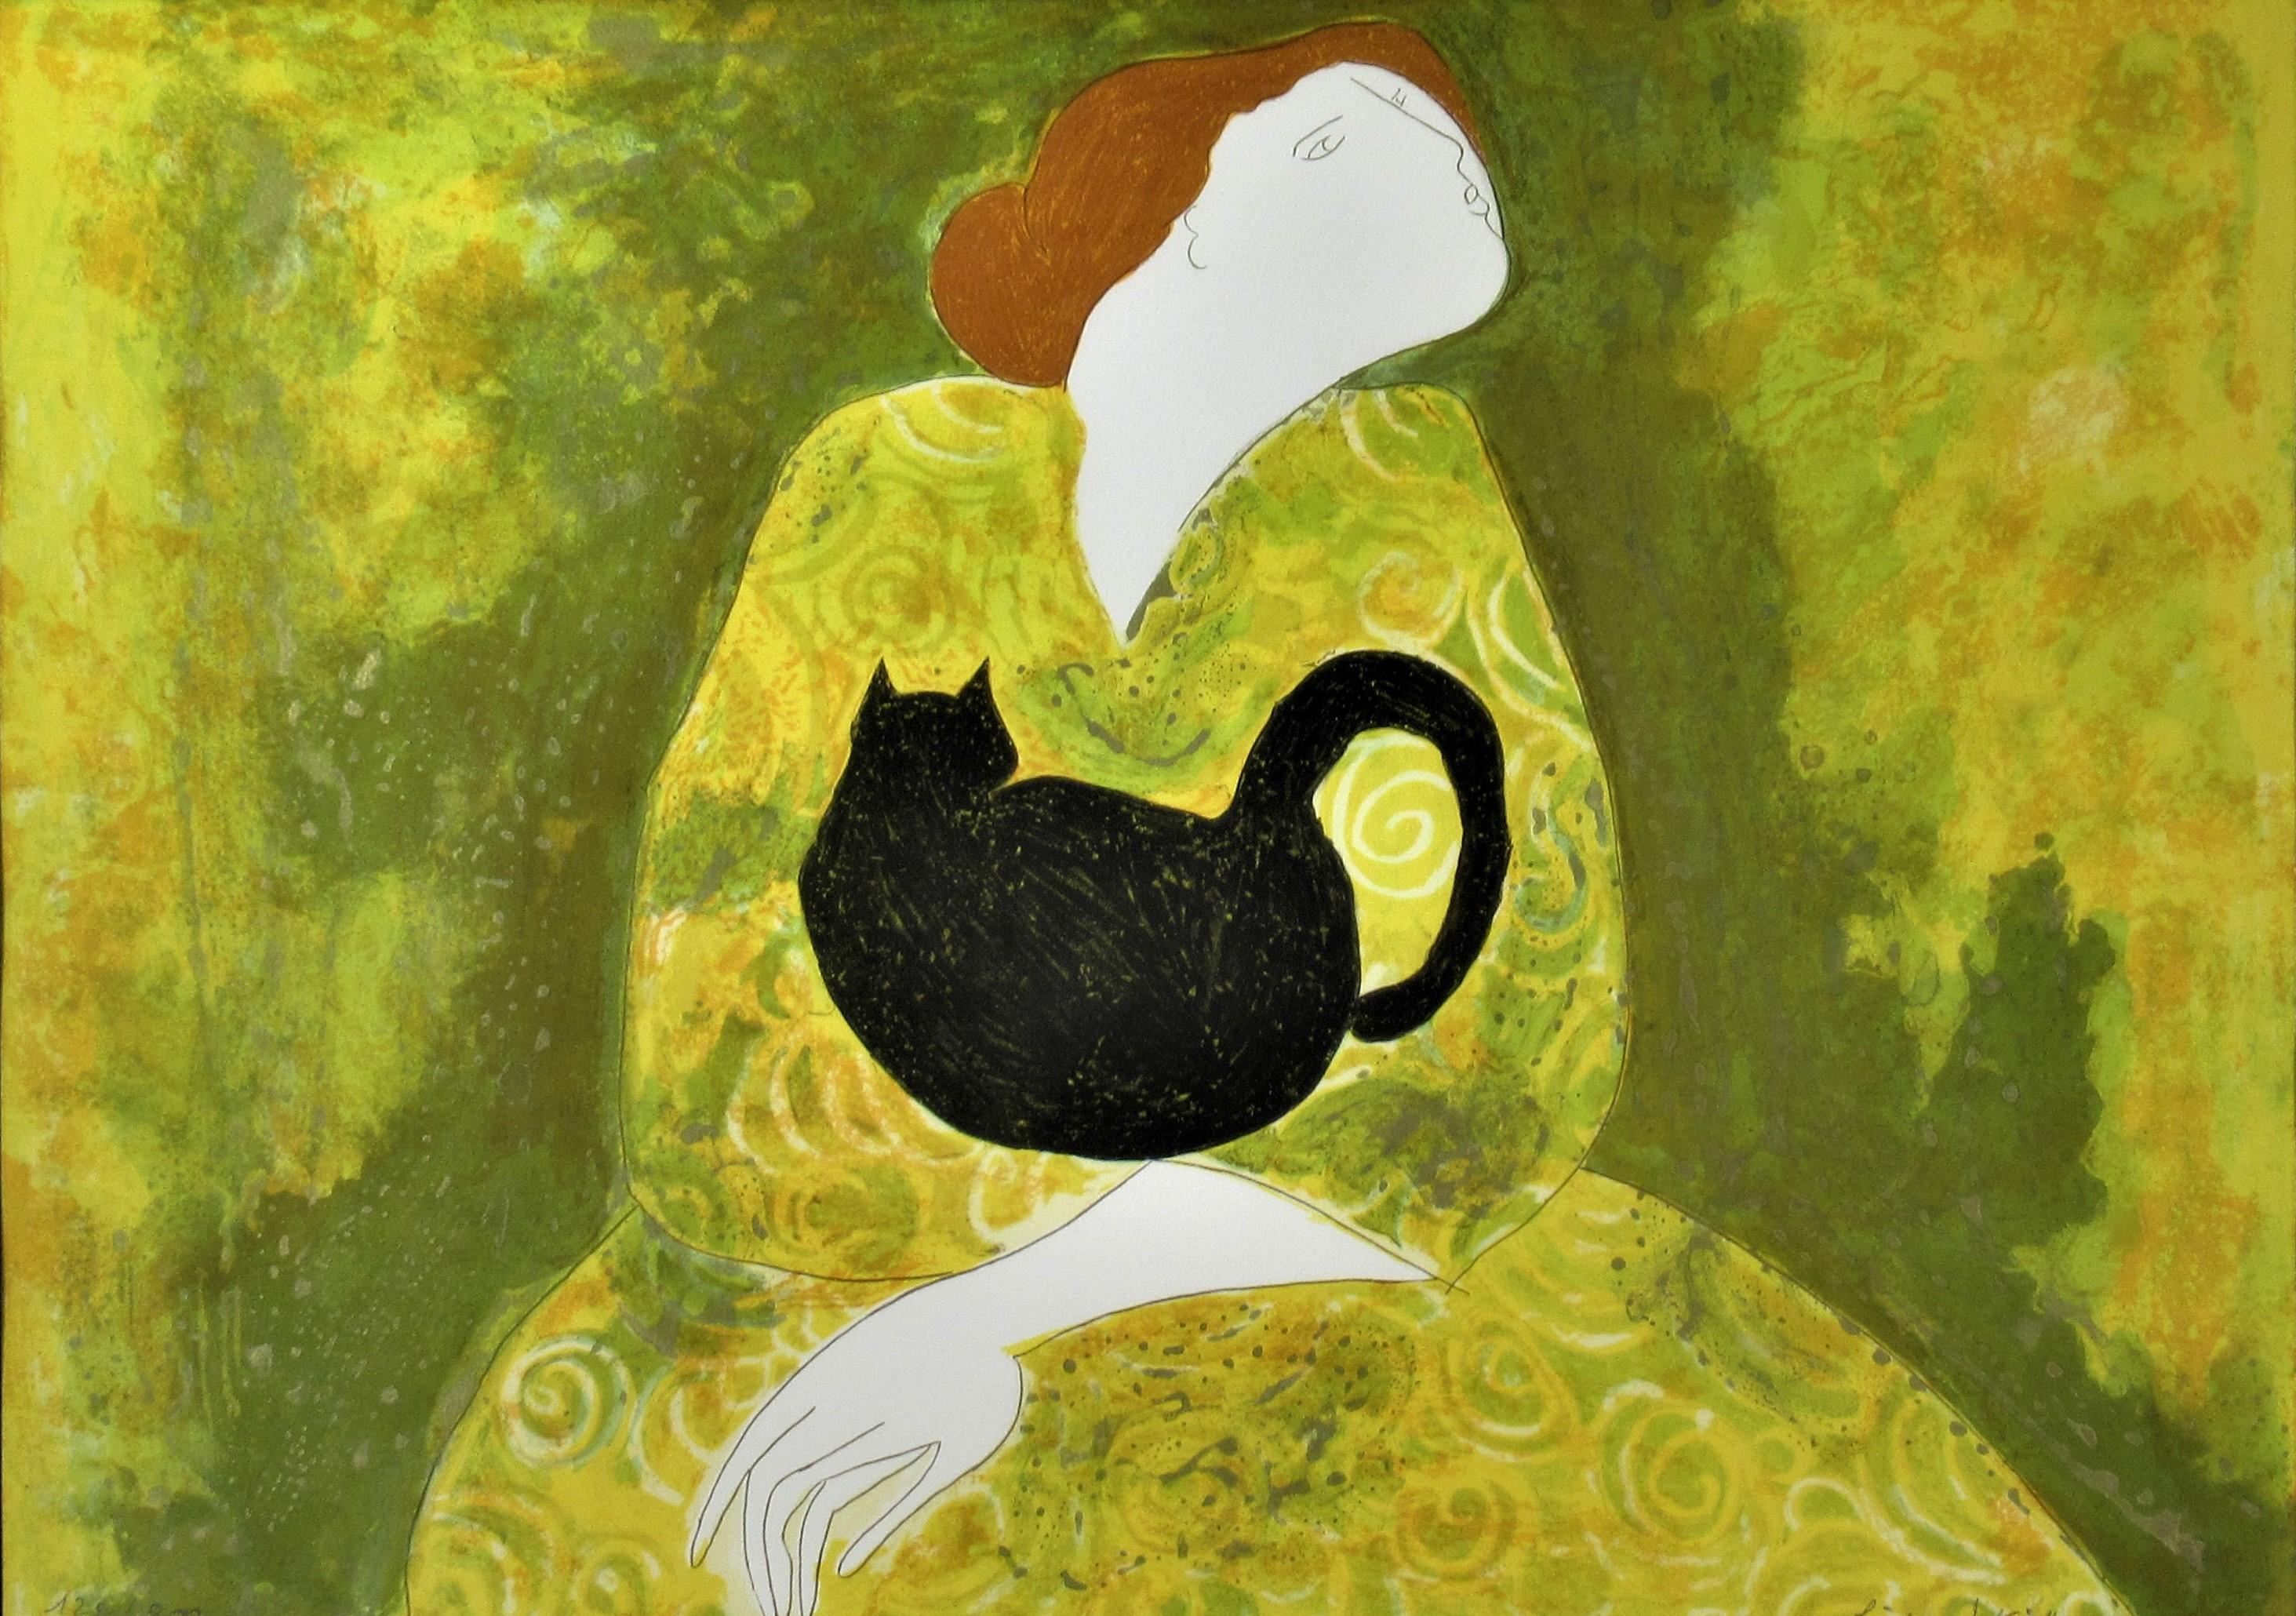 Femme avec chat - Print de Linda Le Kinff